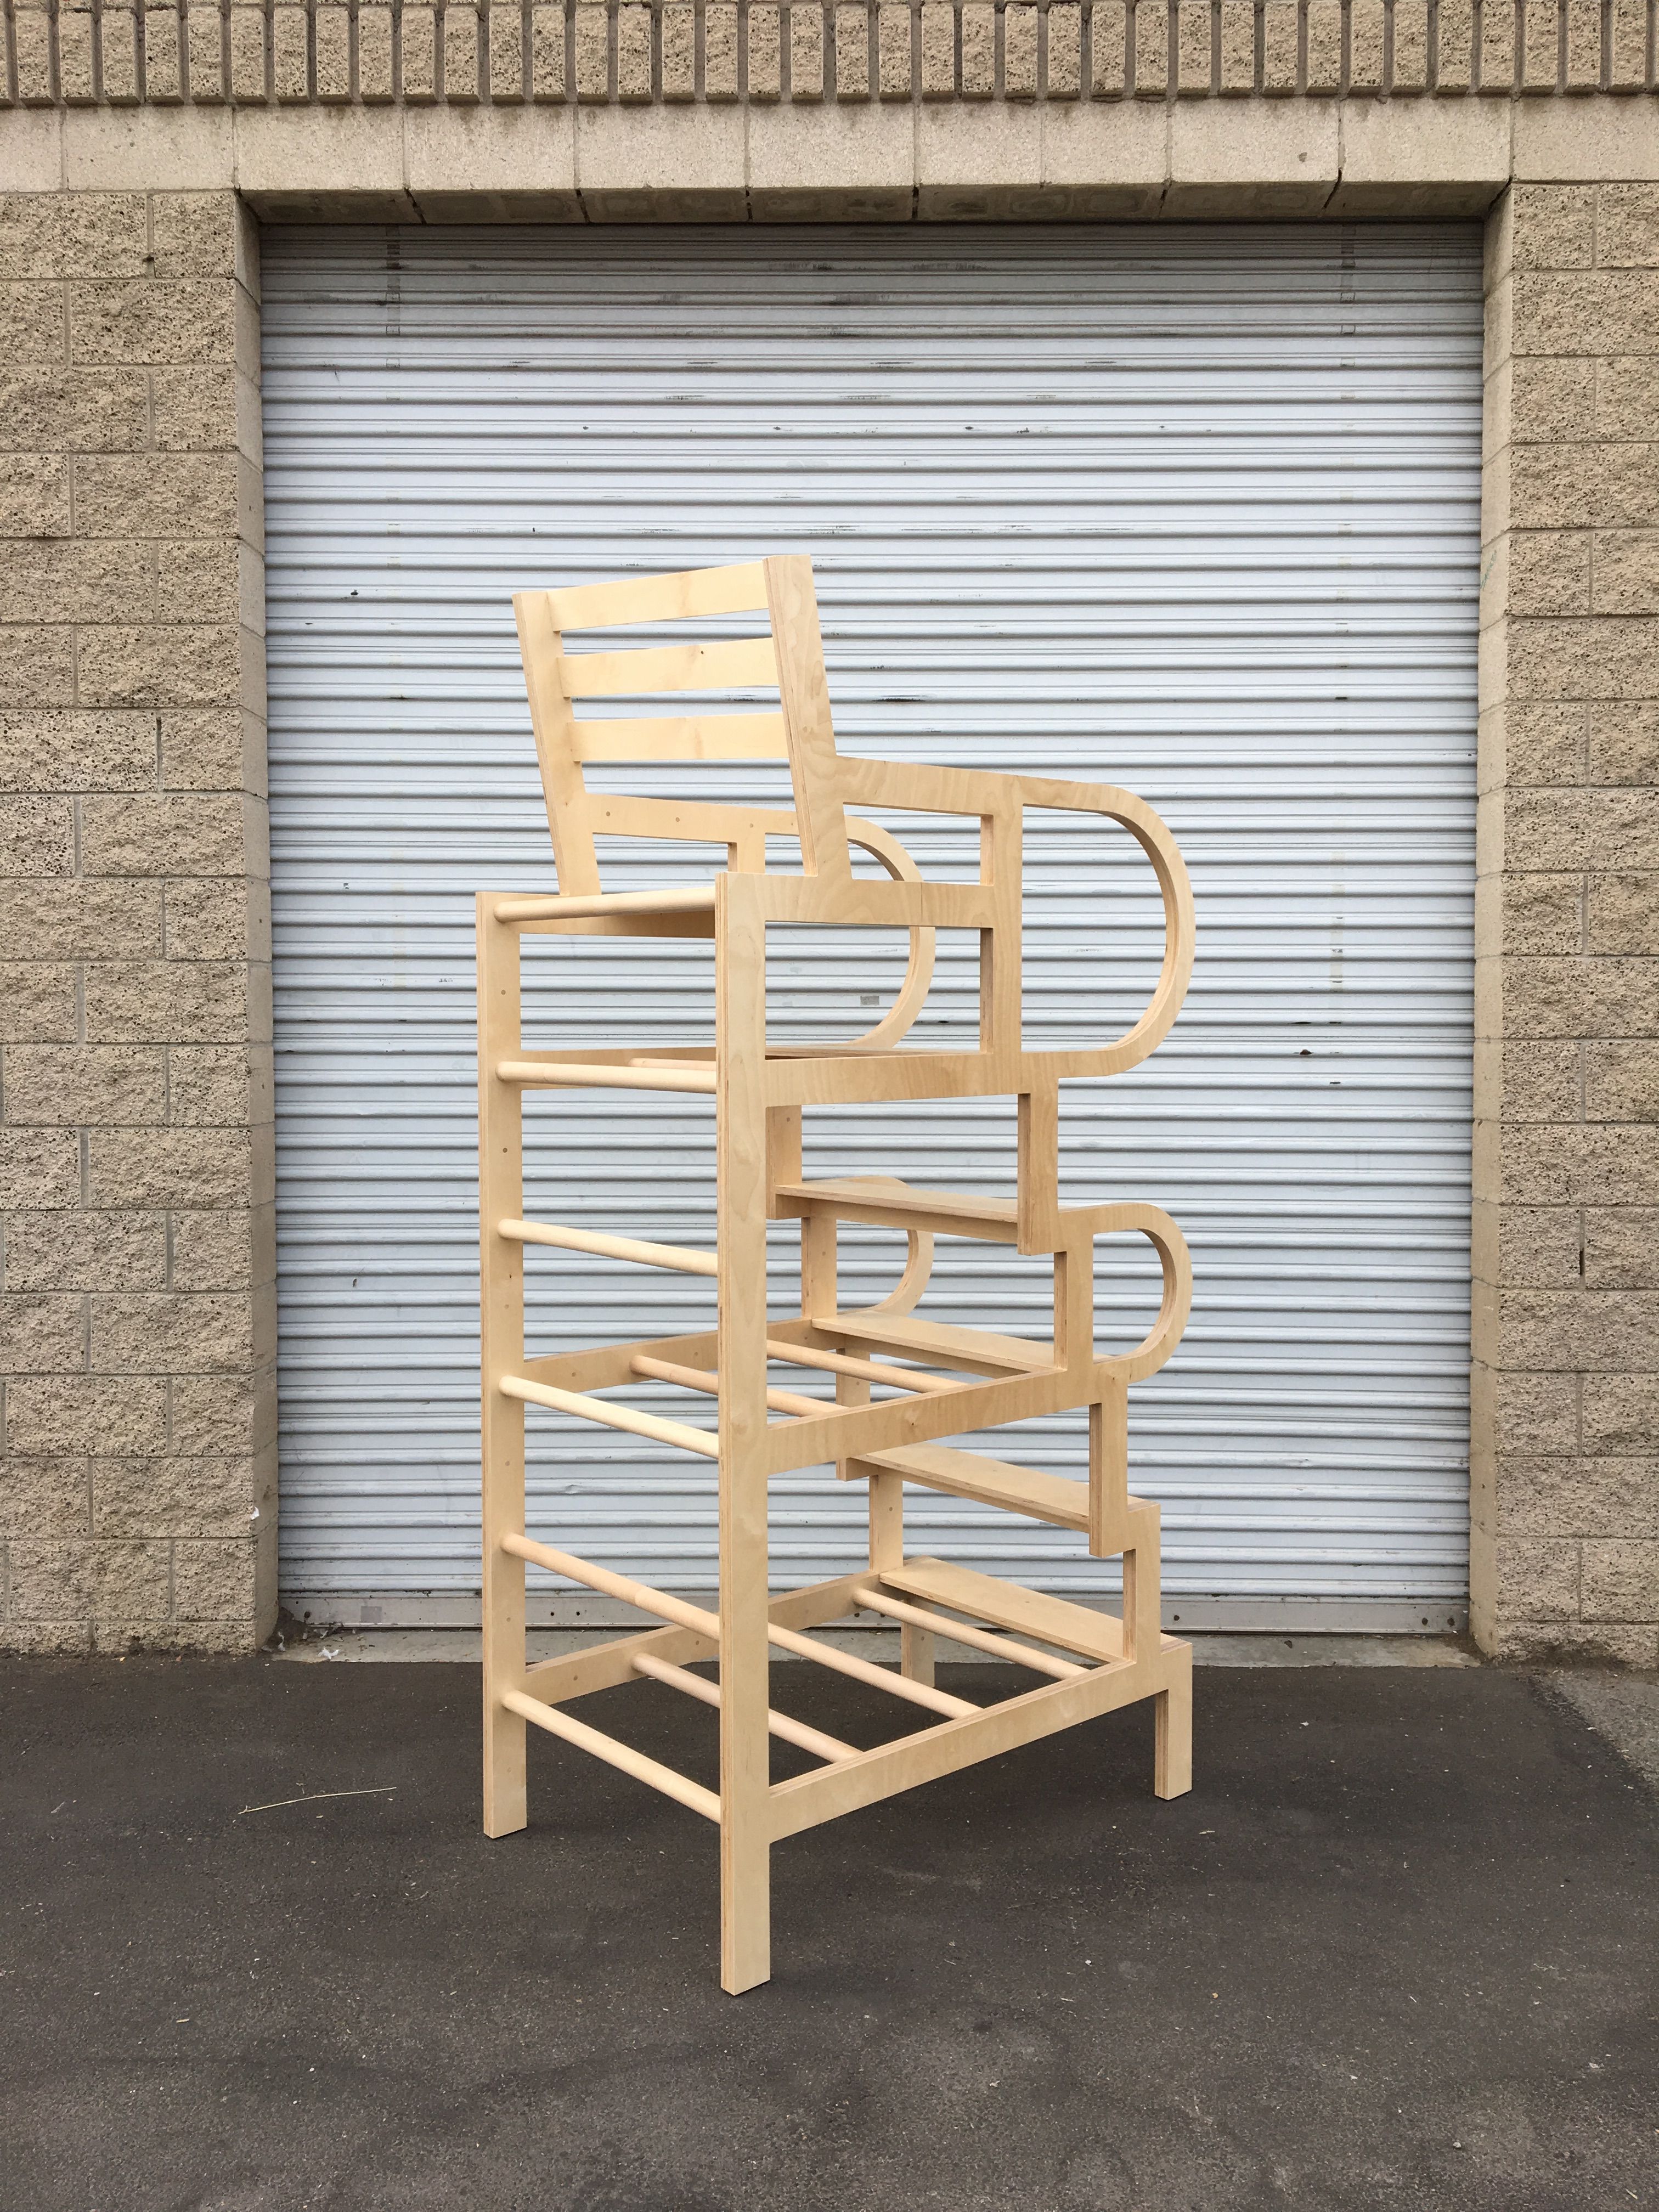  Climbable Chair - Owl Bureau x Adidas / Abbott Kinney Festival product image 3